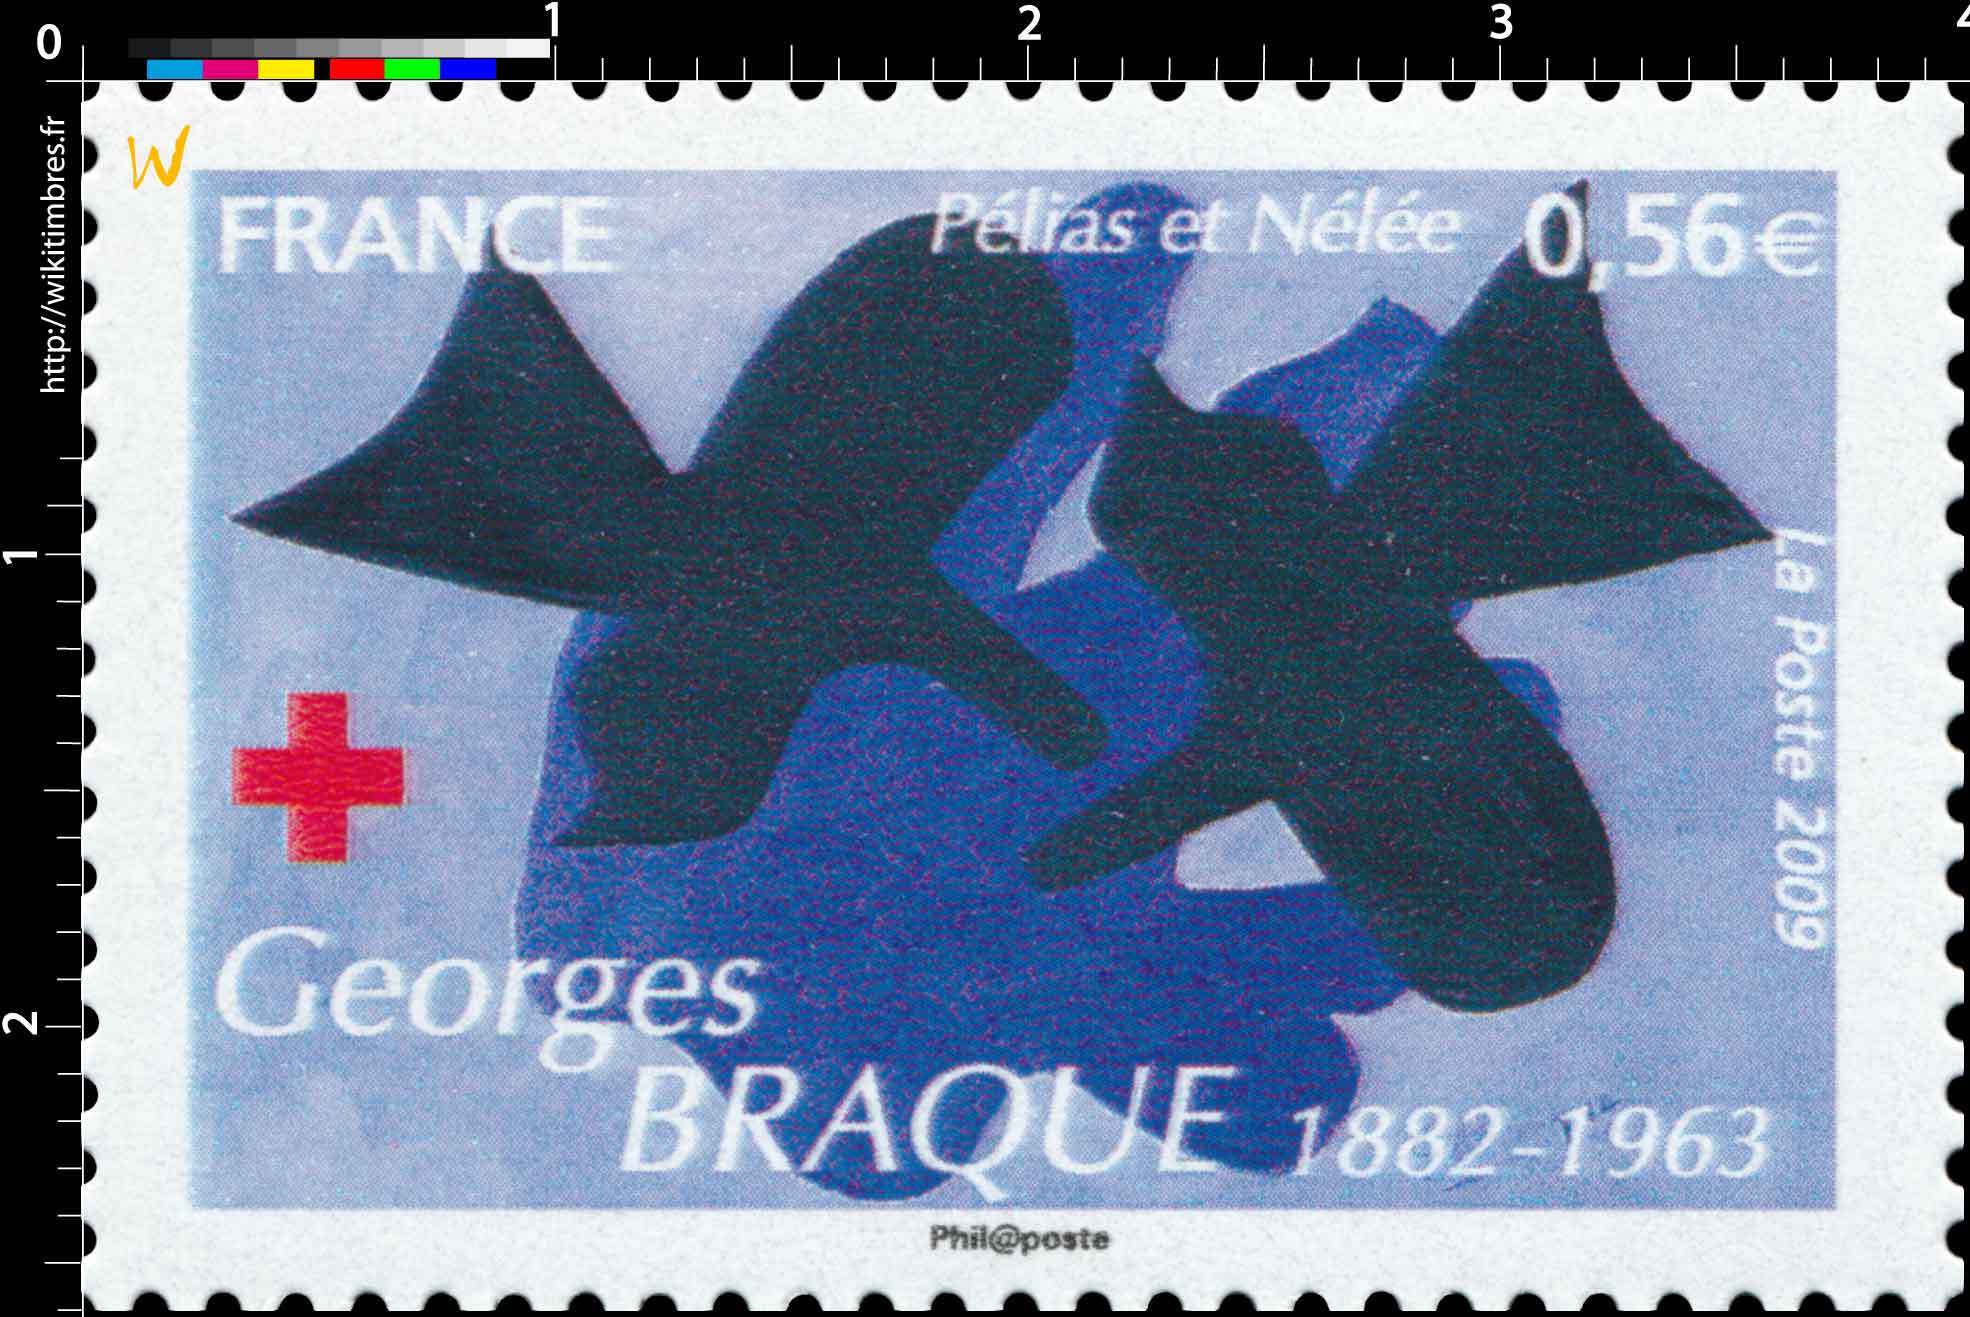 2009 Georges BRAQUE 1882-1963 Péléas et Nélée